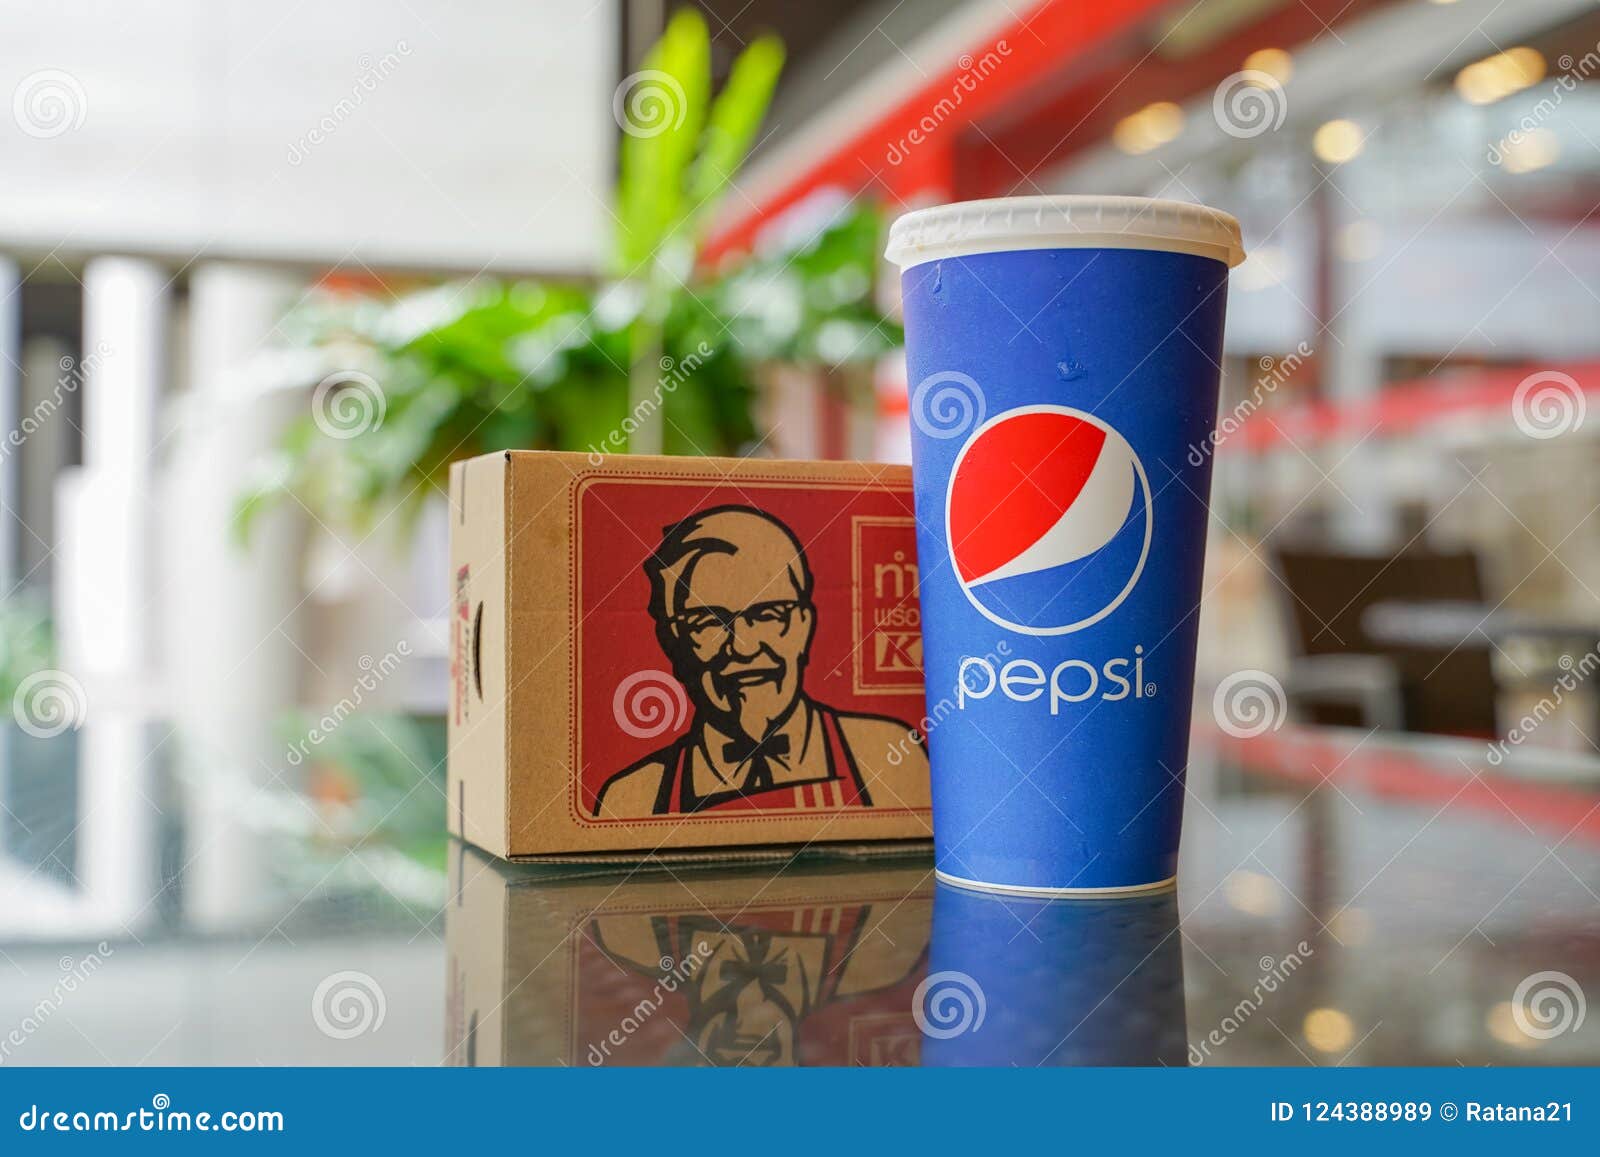 ケンタッキー ペプシ 日本KFCは､なぜピザハットを売却したのか